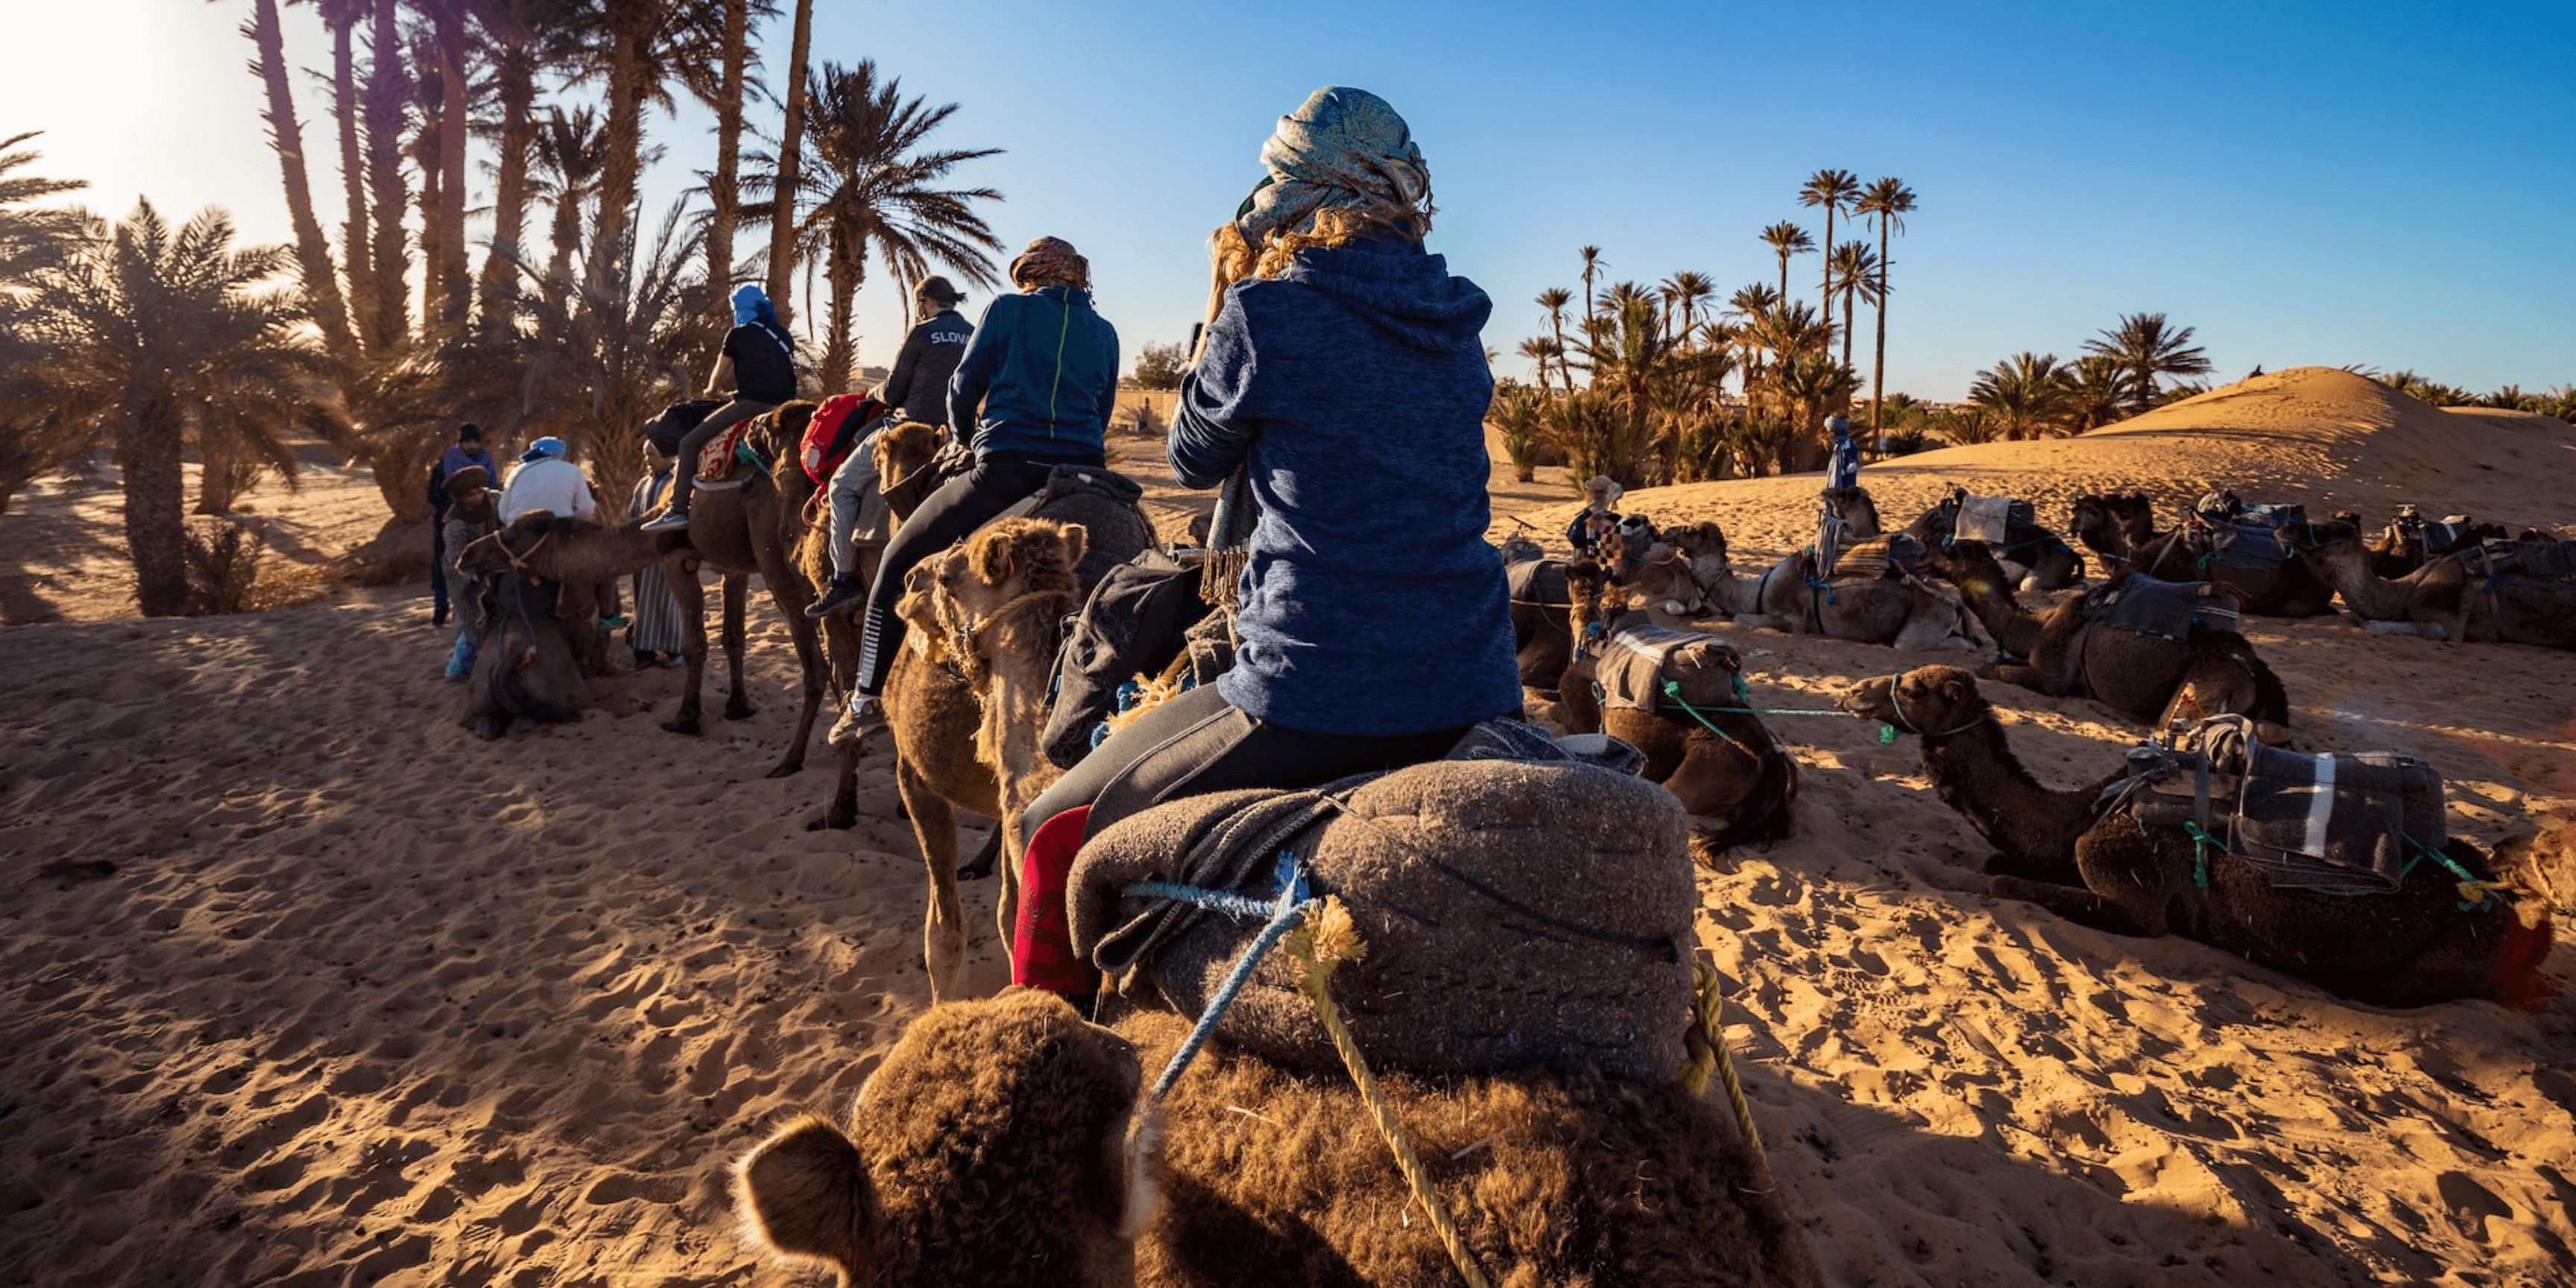 Moroccan Adventures: Top Travel Tips